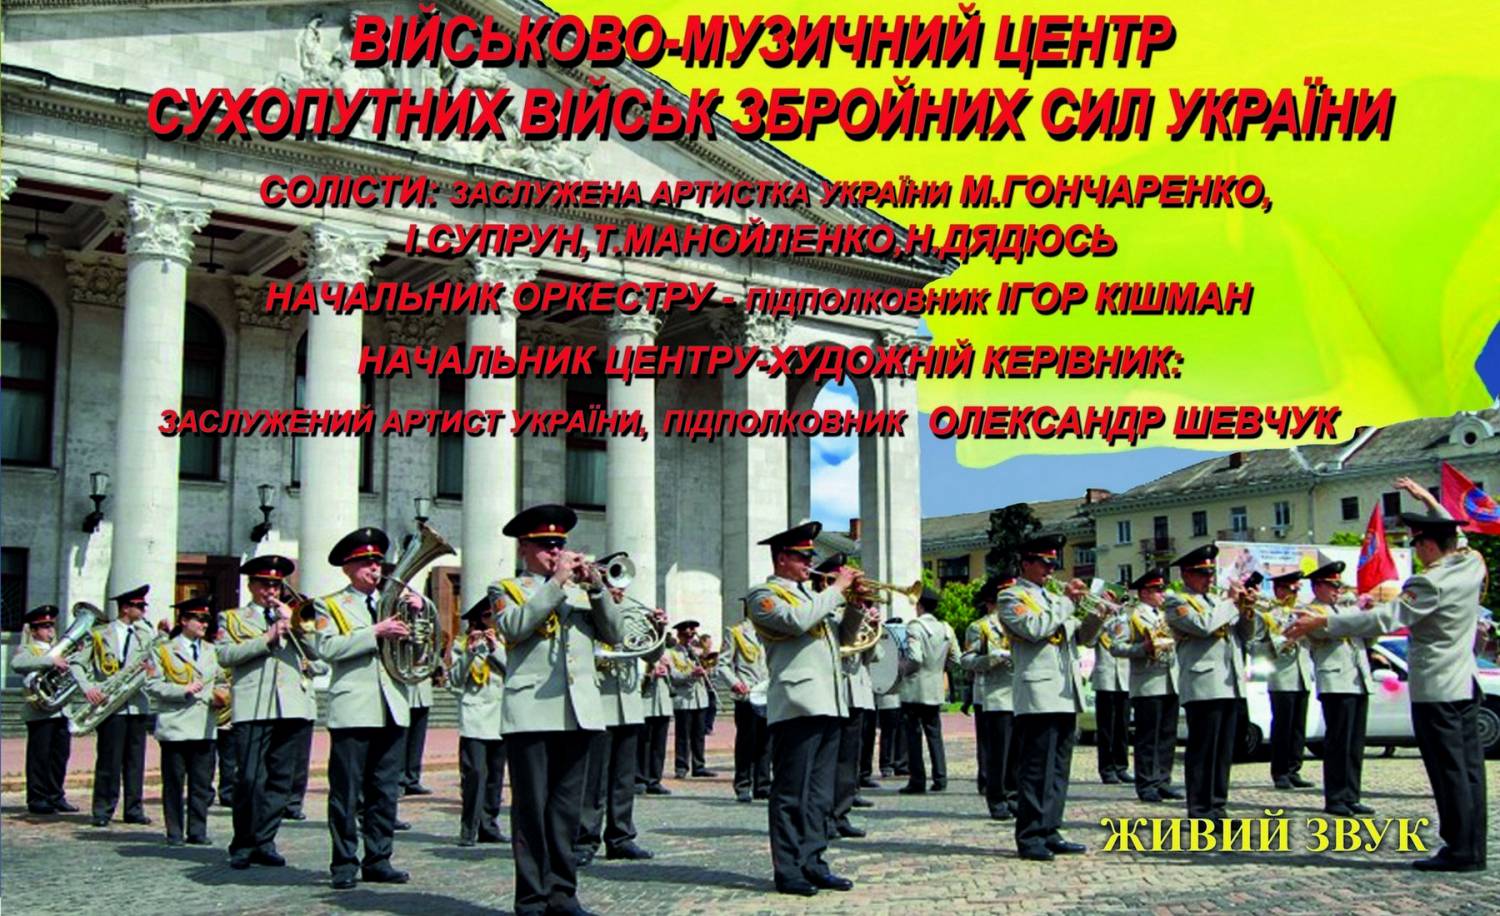 Славетний Військово-музичний центр Сухопутних військ ЗСУ завітає на 